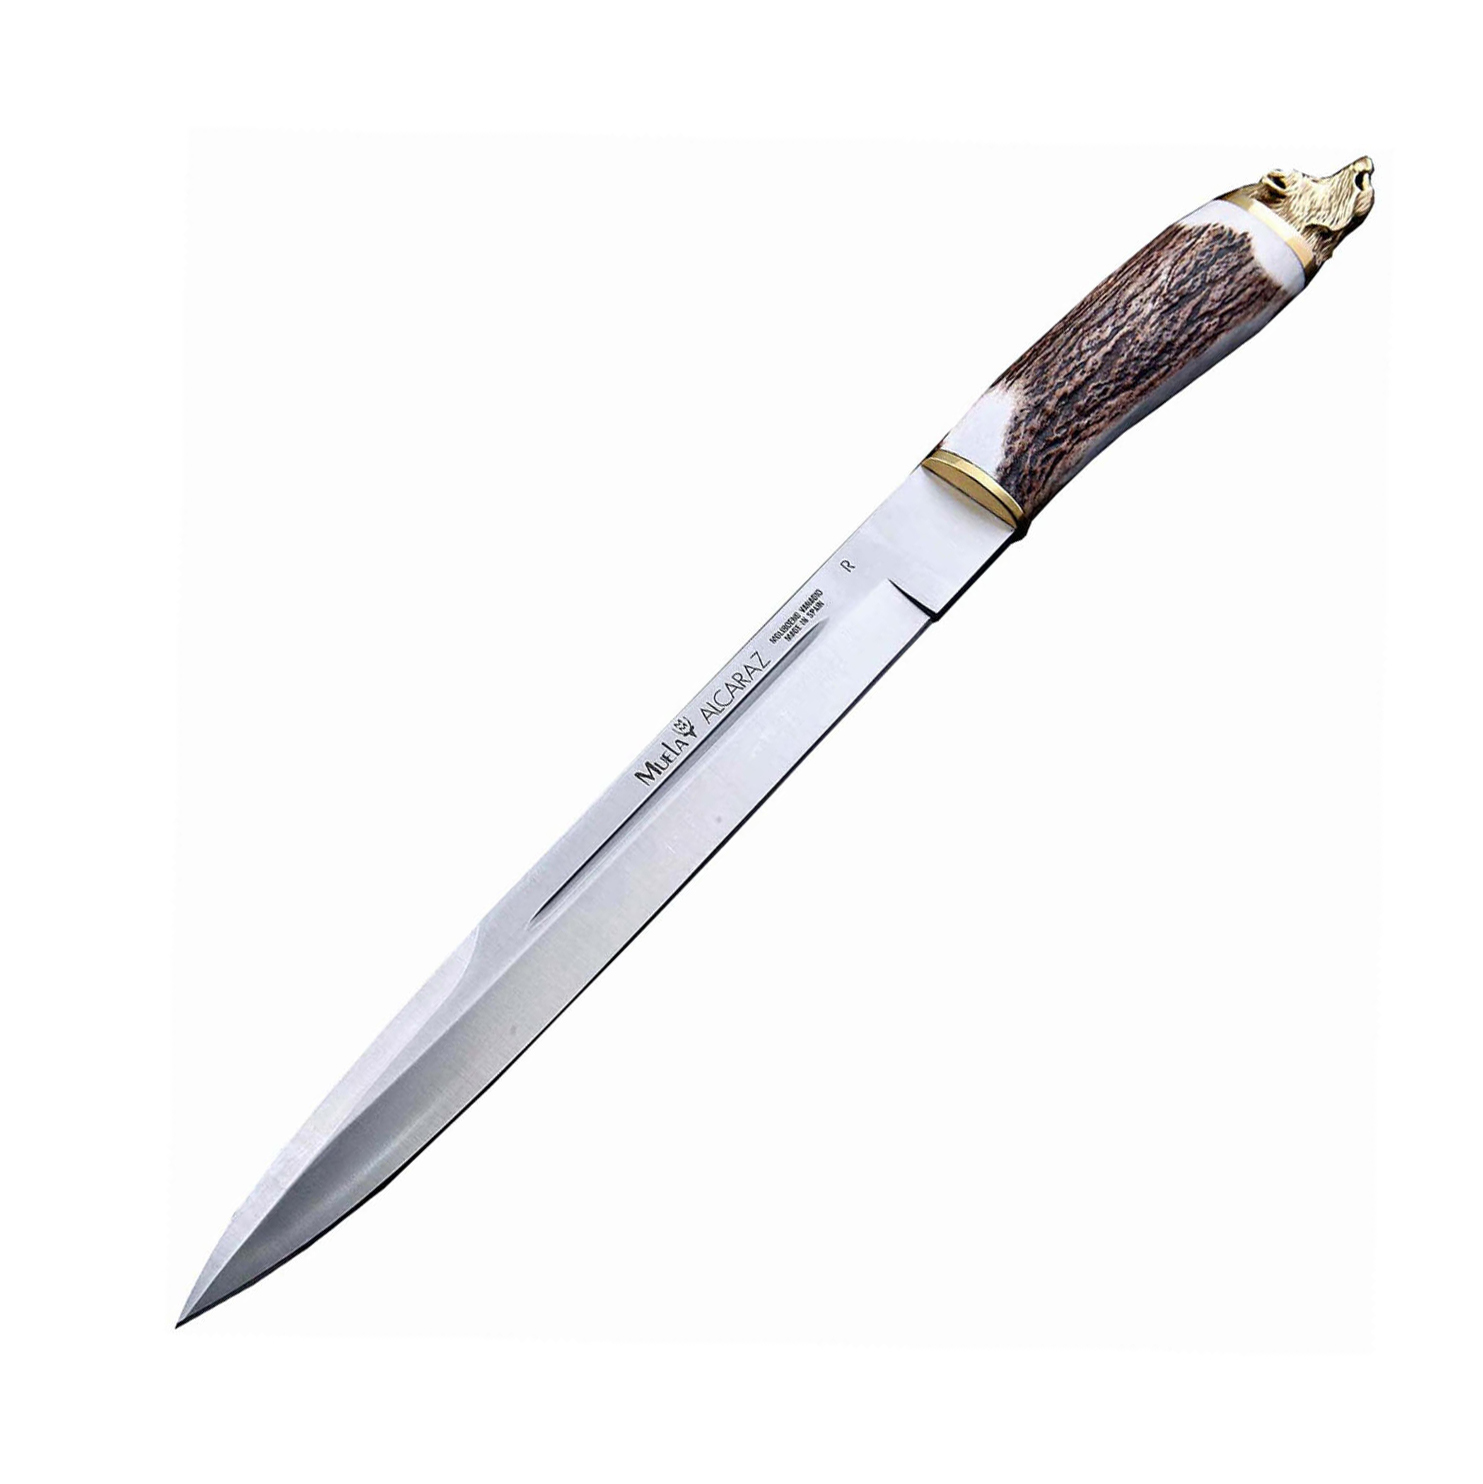 Нож с фиксированным клинком Muela Alcaraz Stag Handle, сталь X50CrMoV15, рукоять олений рог от Ножиков